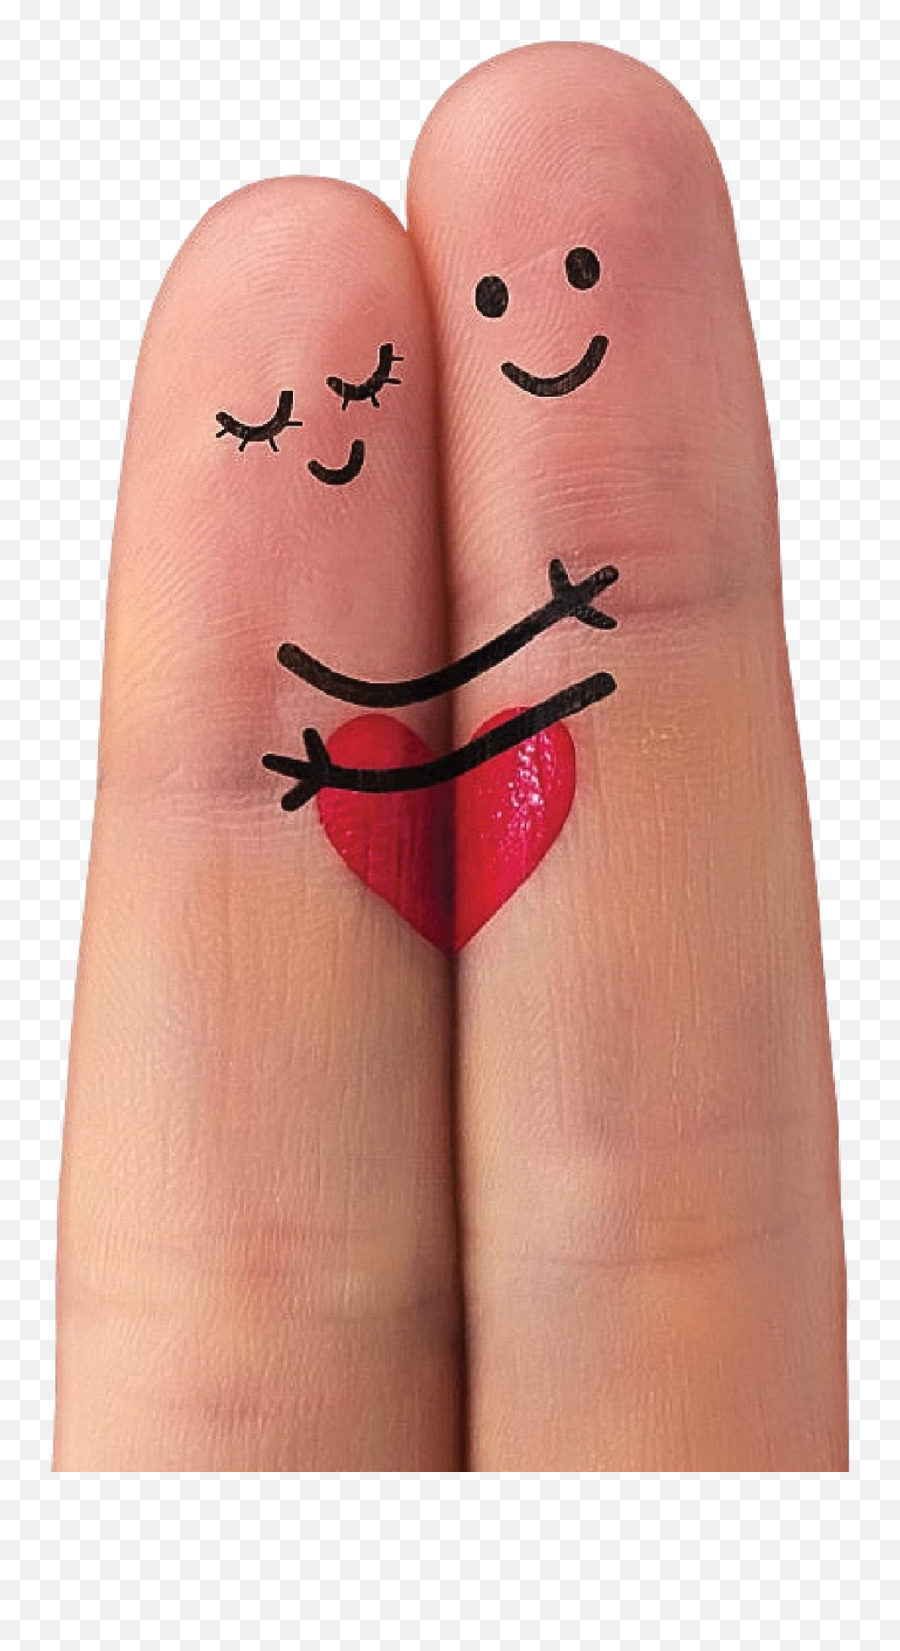 Cimar Fertility Centre Ivf Hospital Kochi Edappal - Tu Emoji,Finger Point Emoticon